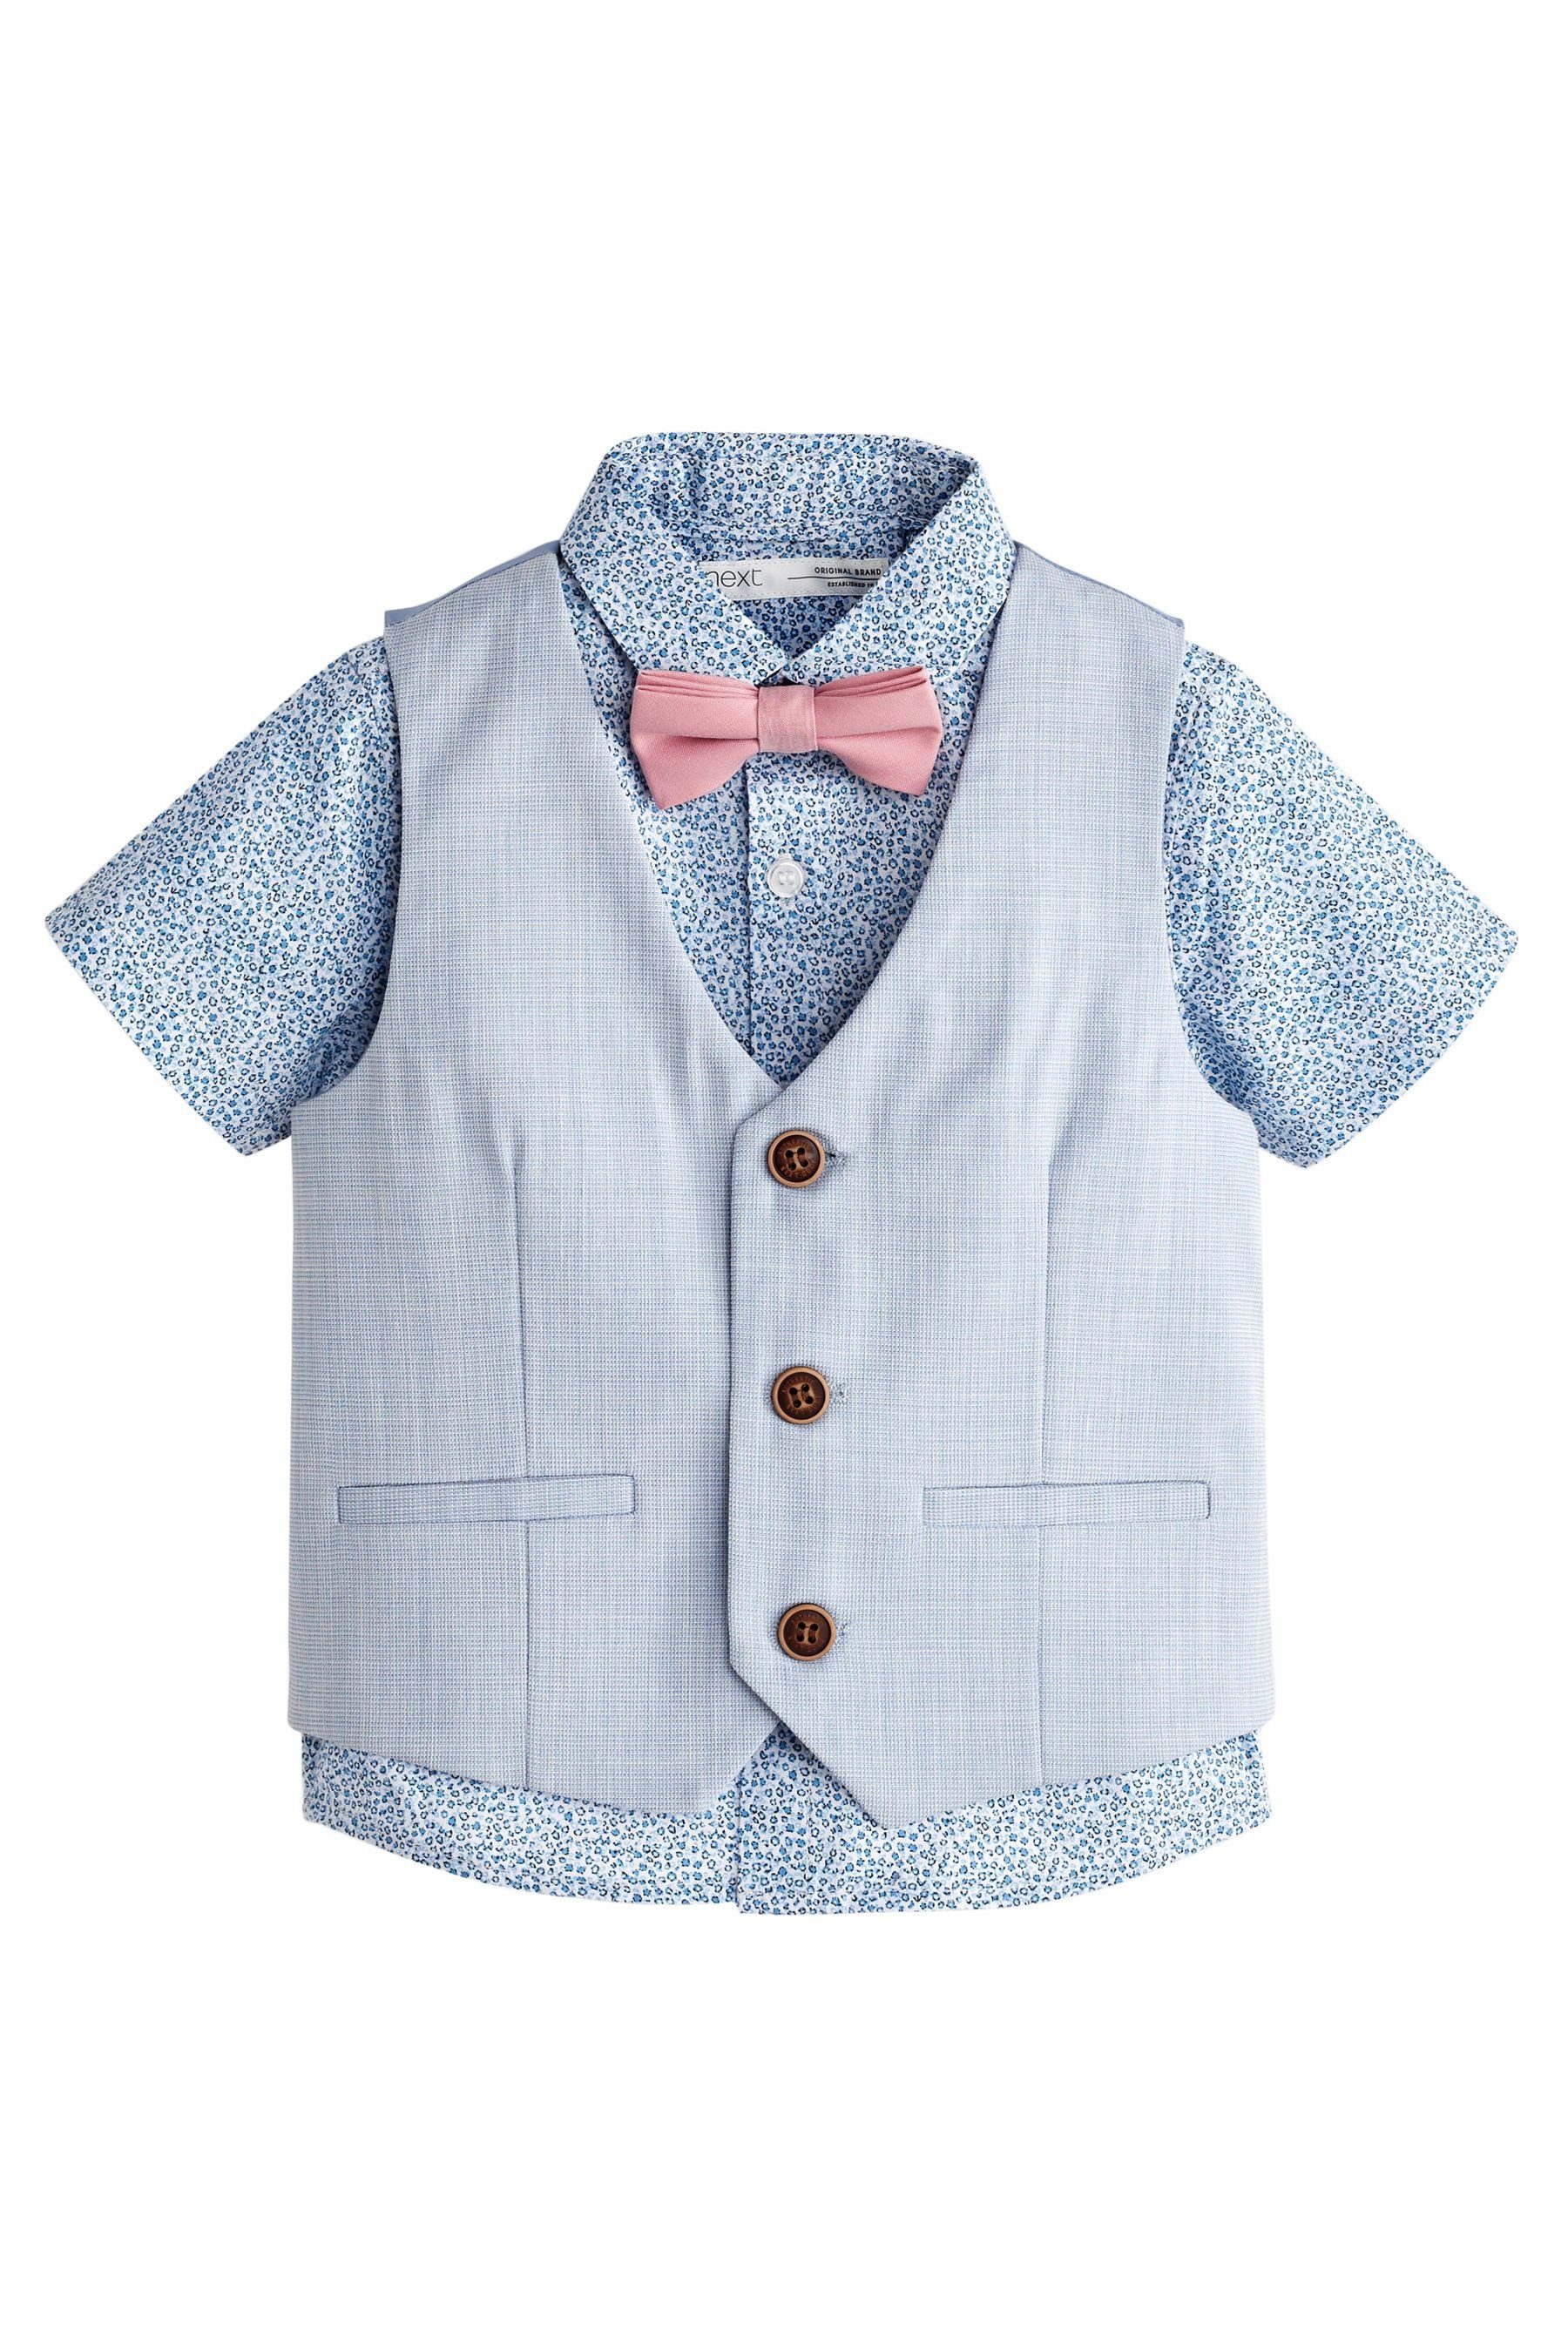 Next Weste, Hemd & Krawatte/Fliege (3-tlg) Blue Floral | Baby-Sets